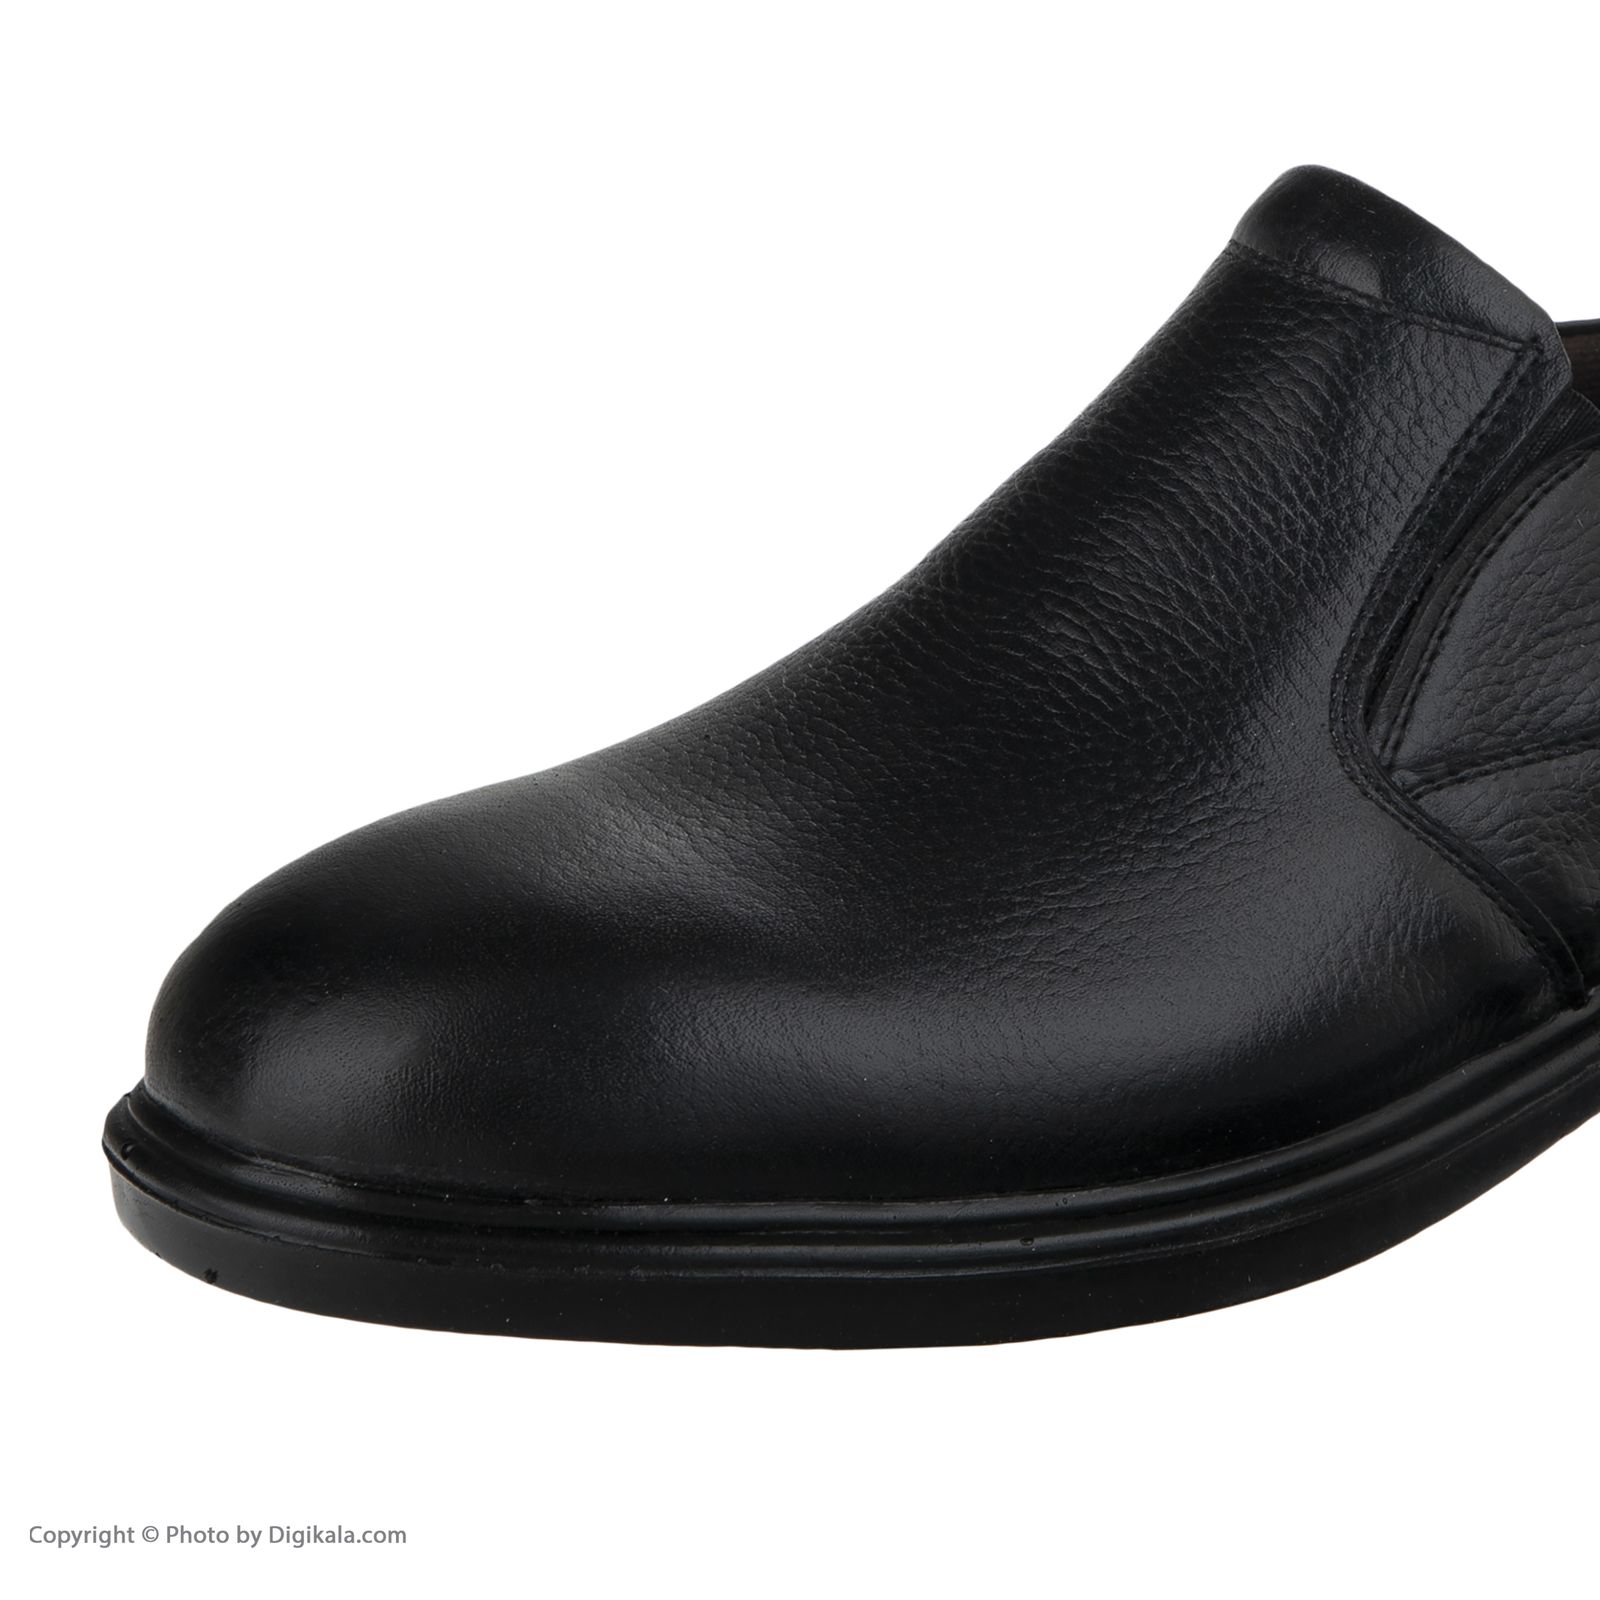 کفش مردانه کروماکی مدل بزرگ پا کد km873-1 -  - 3